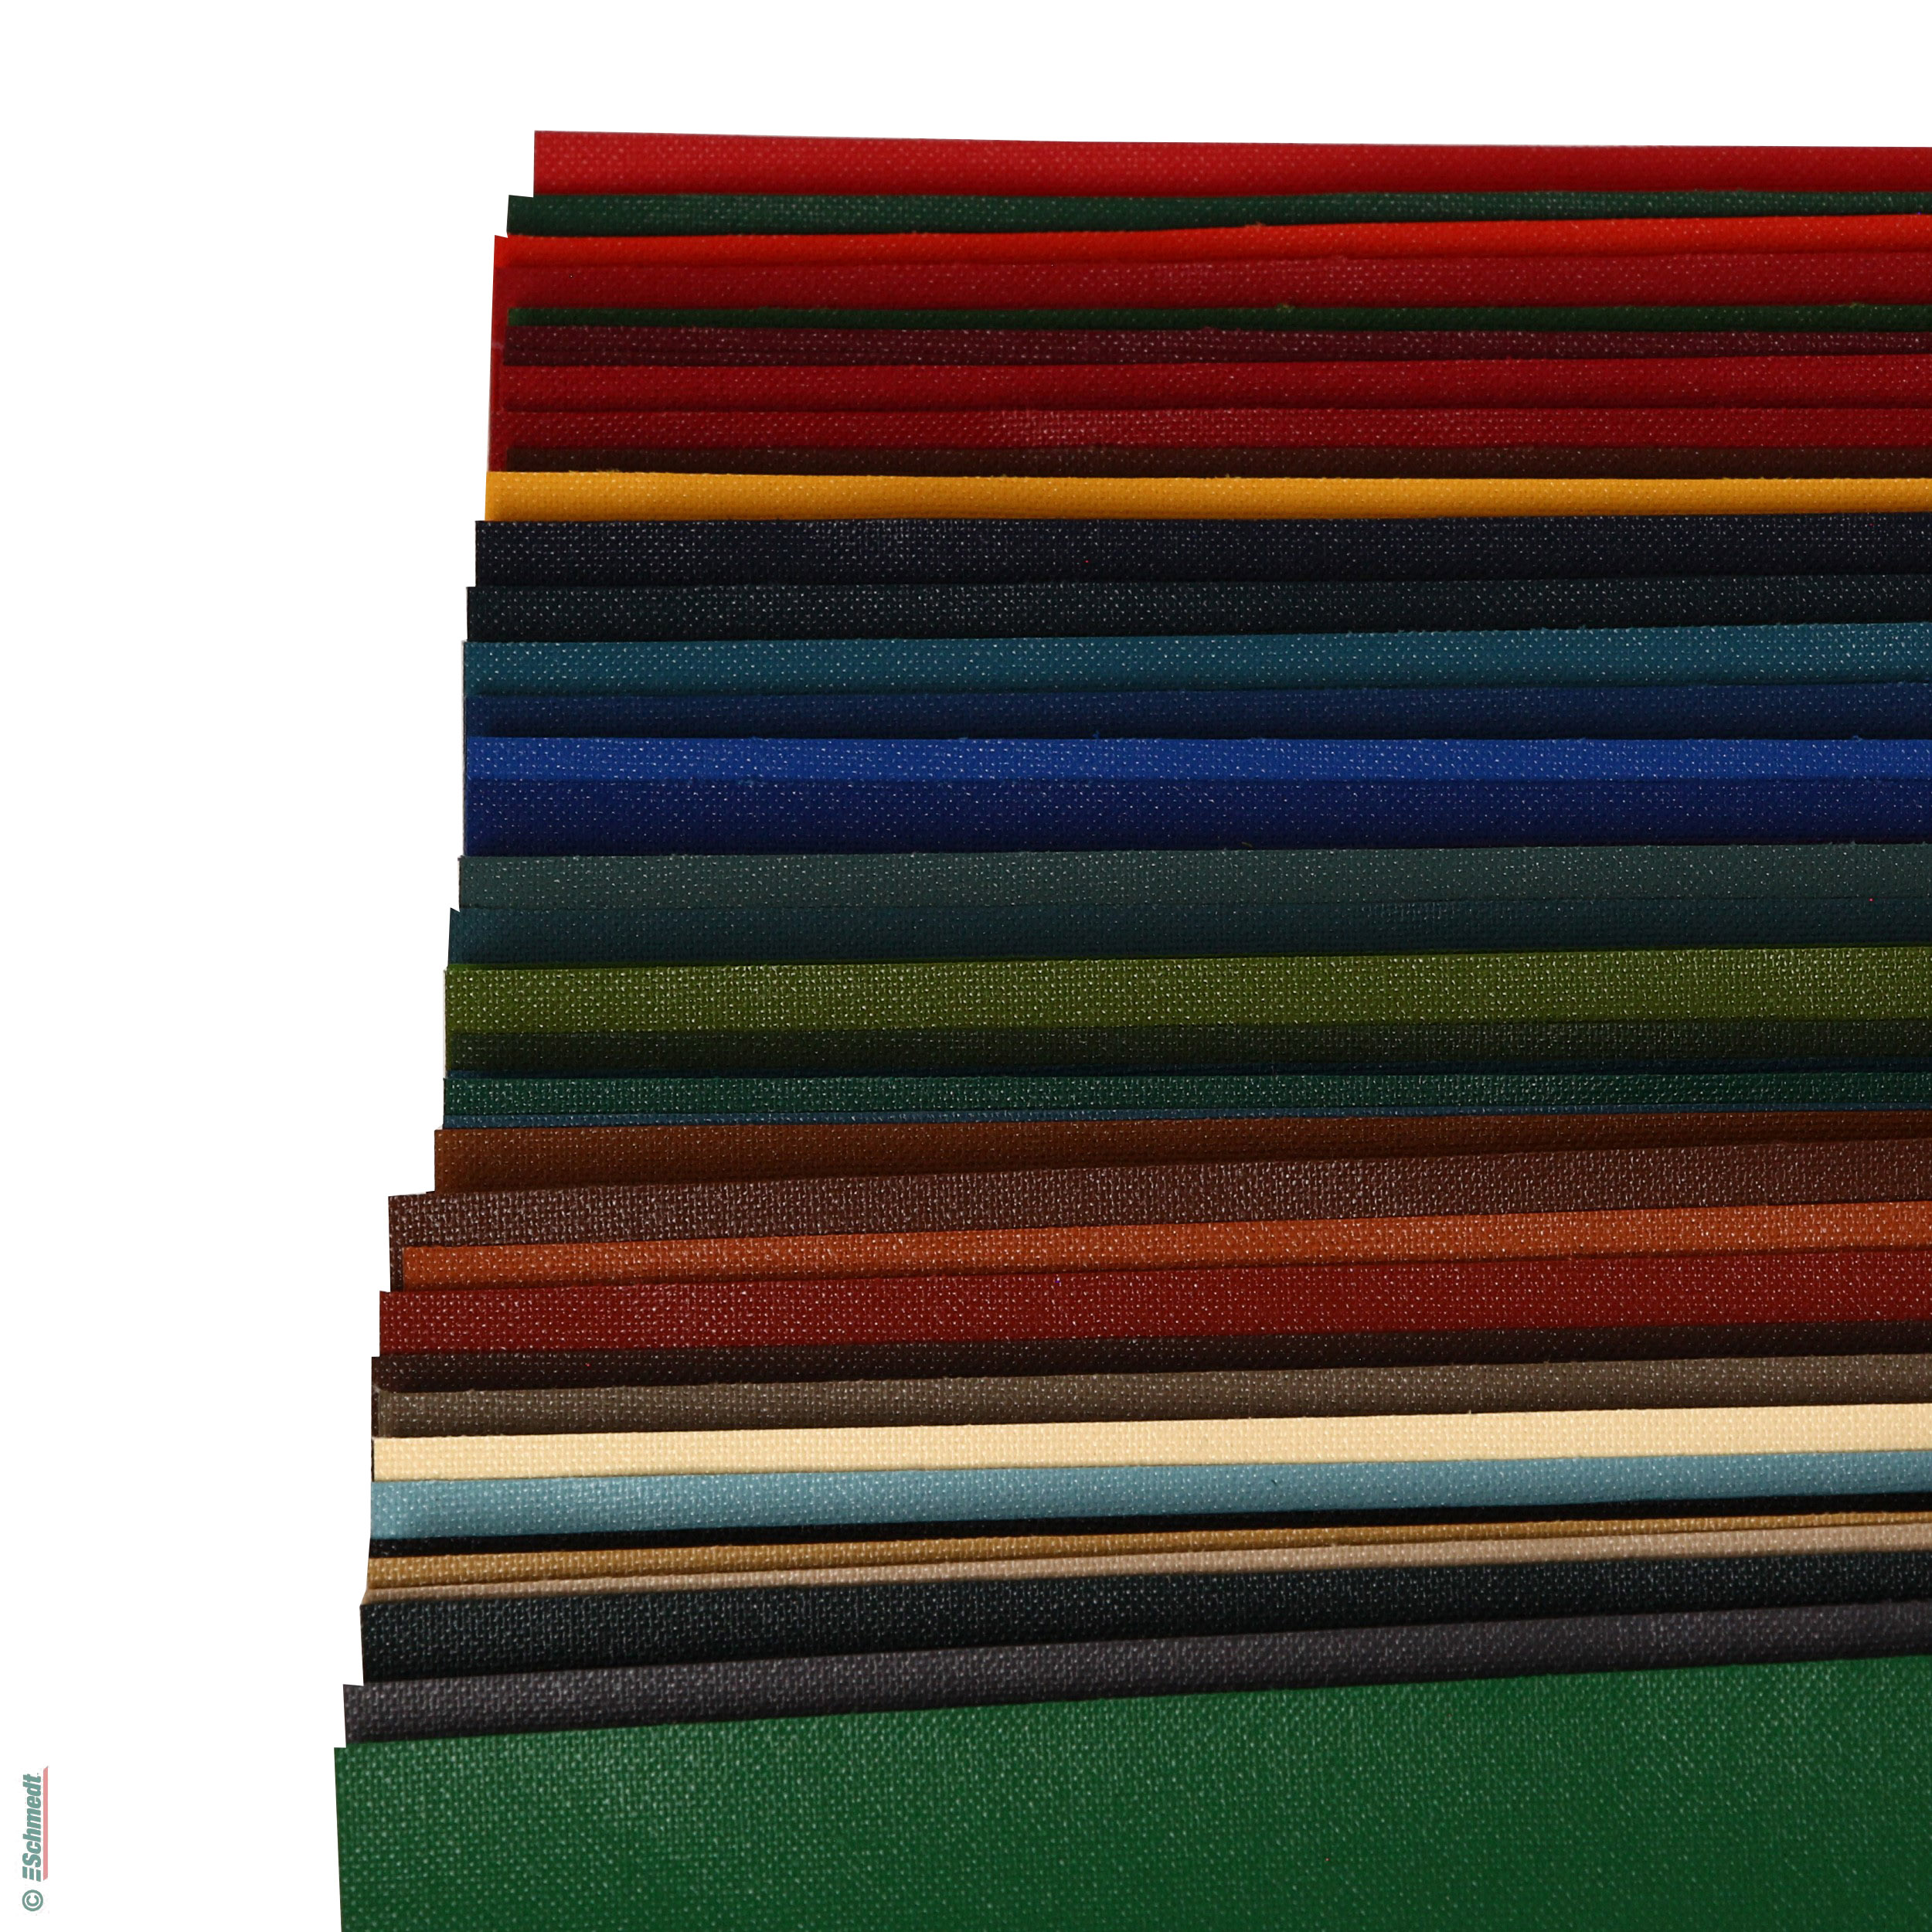 Paquete de muestras - Englisch Buckram - tela de biblioteca - Paquete de muestras con muestras DIN A4 de los 46 colores estándar.... - imagen-1